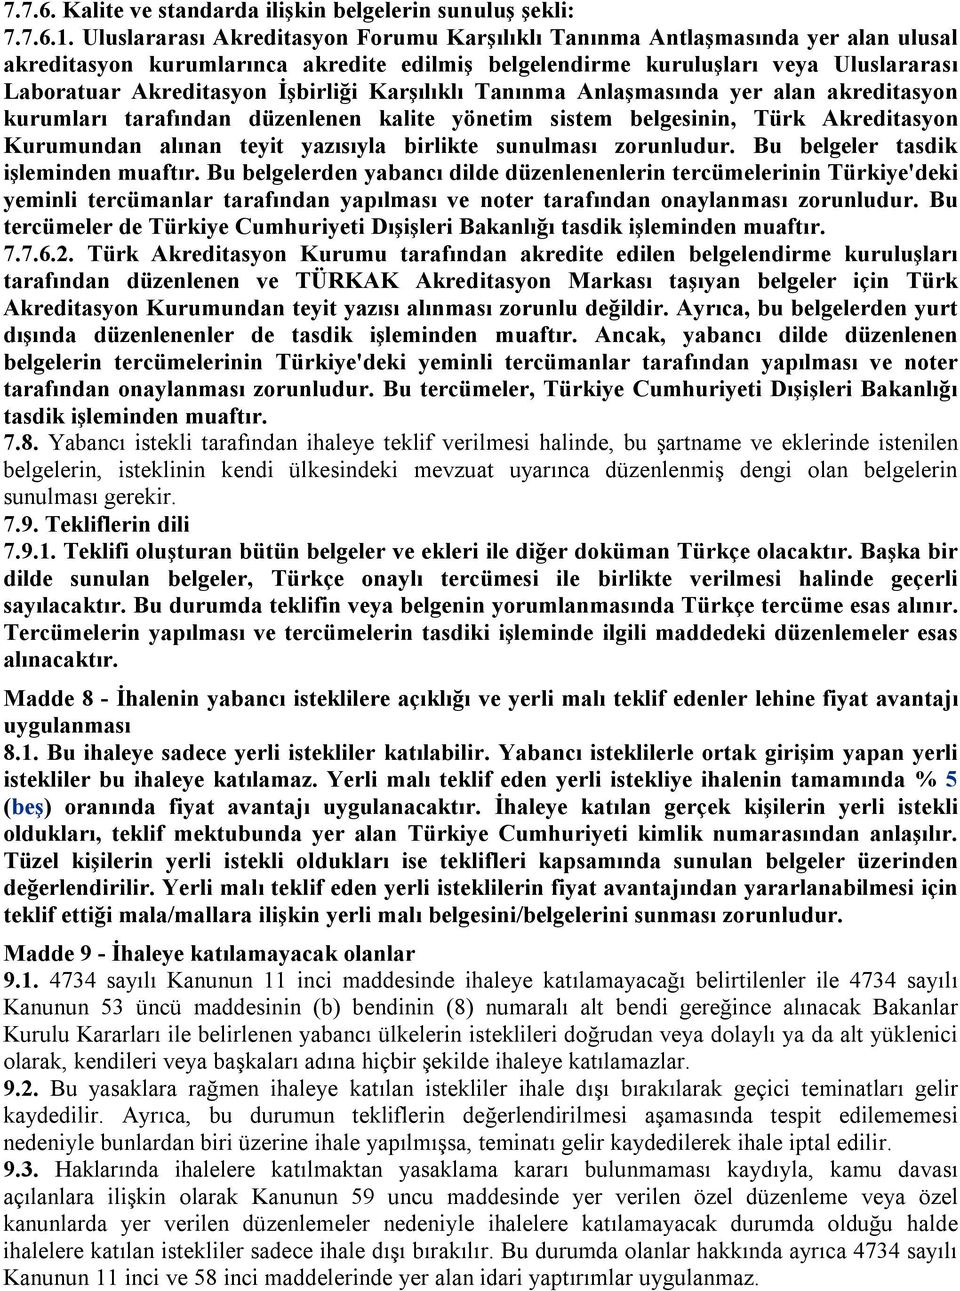 İşbirliği Karşılıklı Tanınma Anlaşmasında yer alan akreditasyon kurumları tarafından düzenlenen kalite yönetim sistem belgesinin, Türk Akreditasyon Kurumundan alınan teyit yazısıyla birlikte